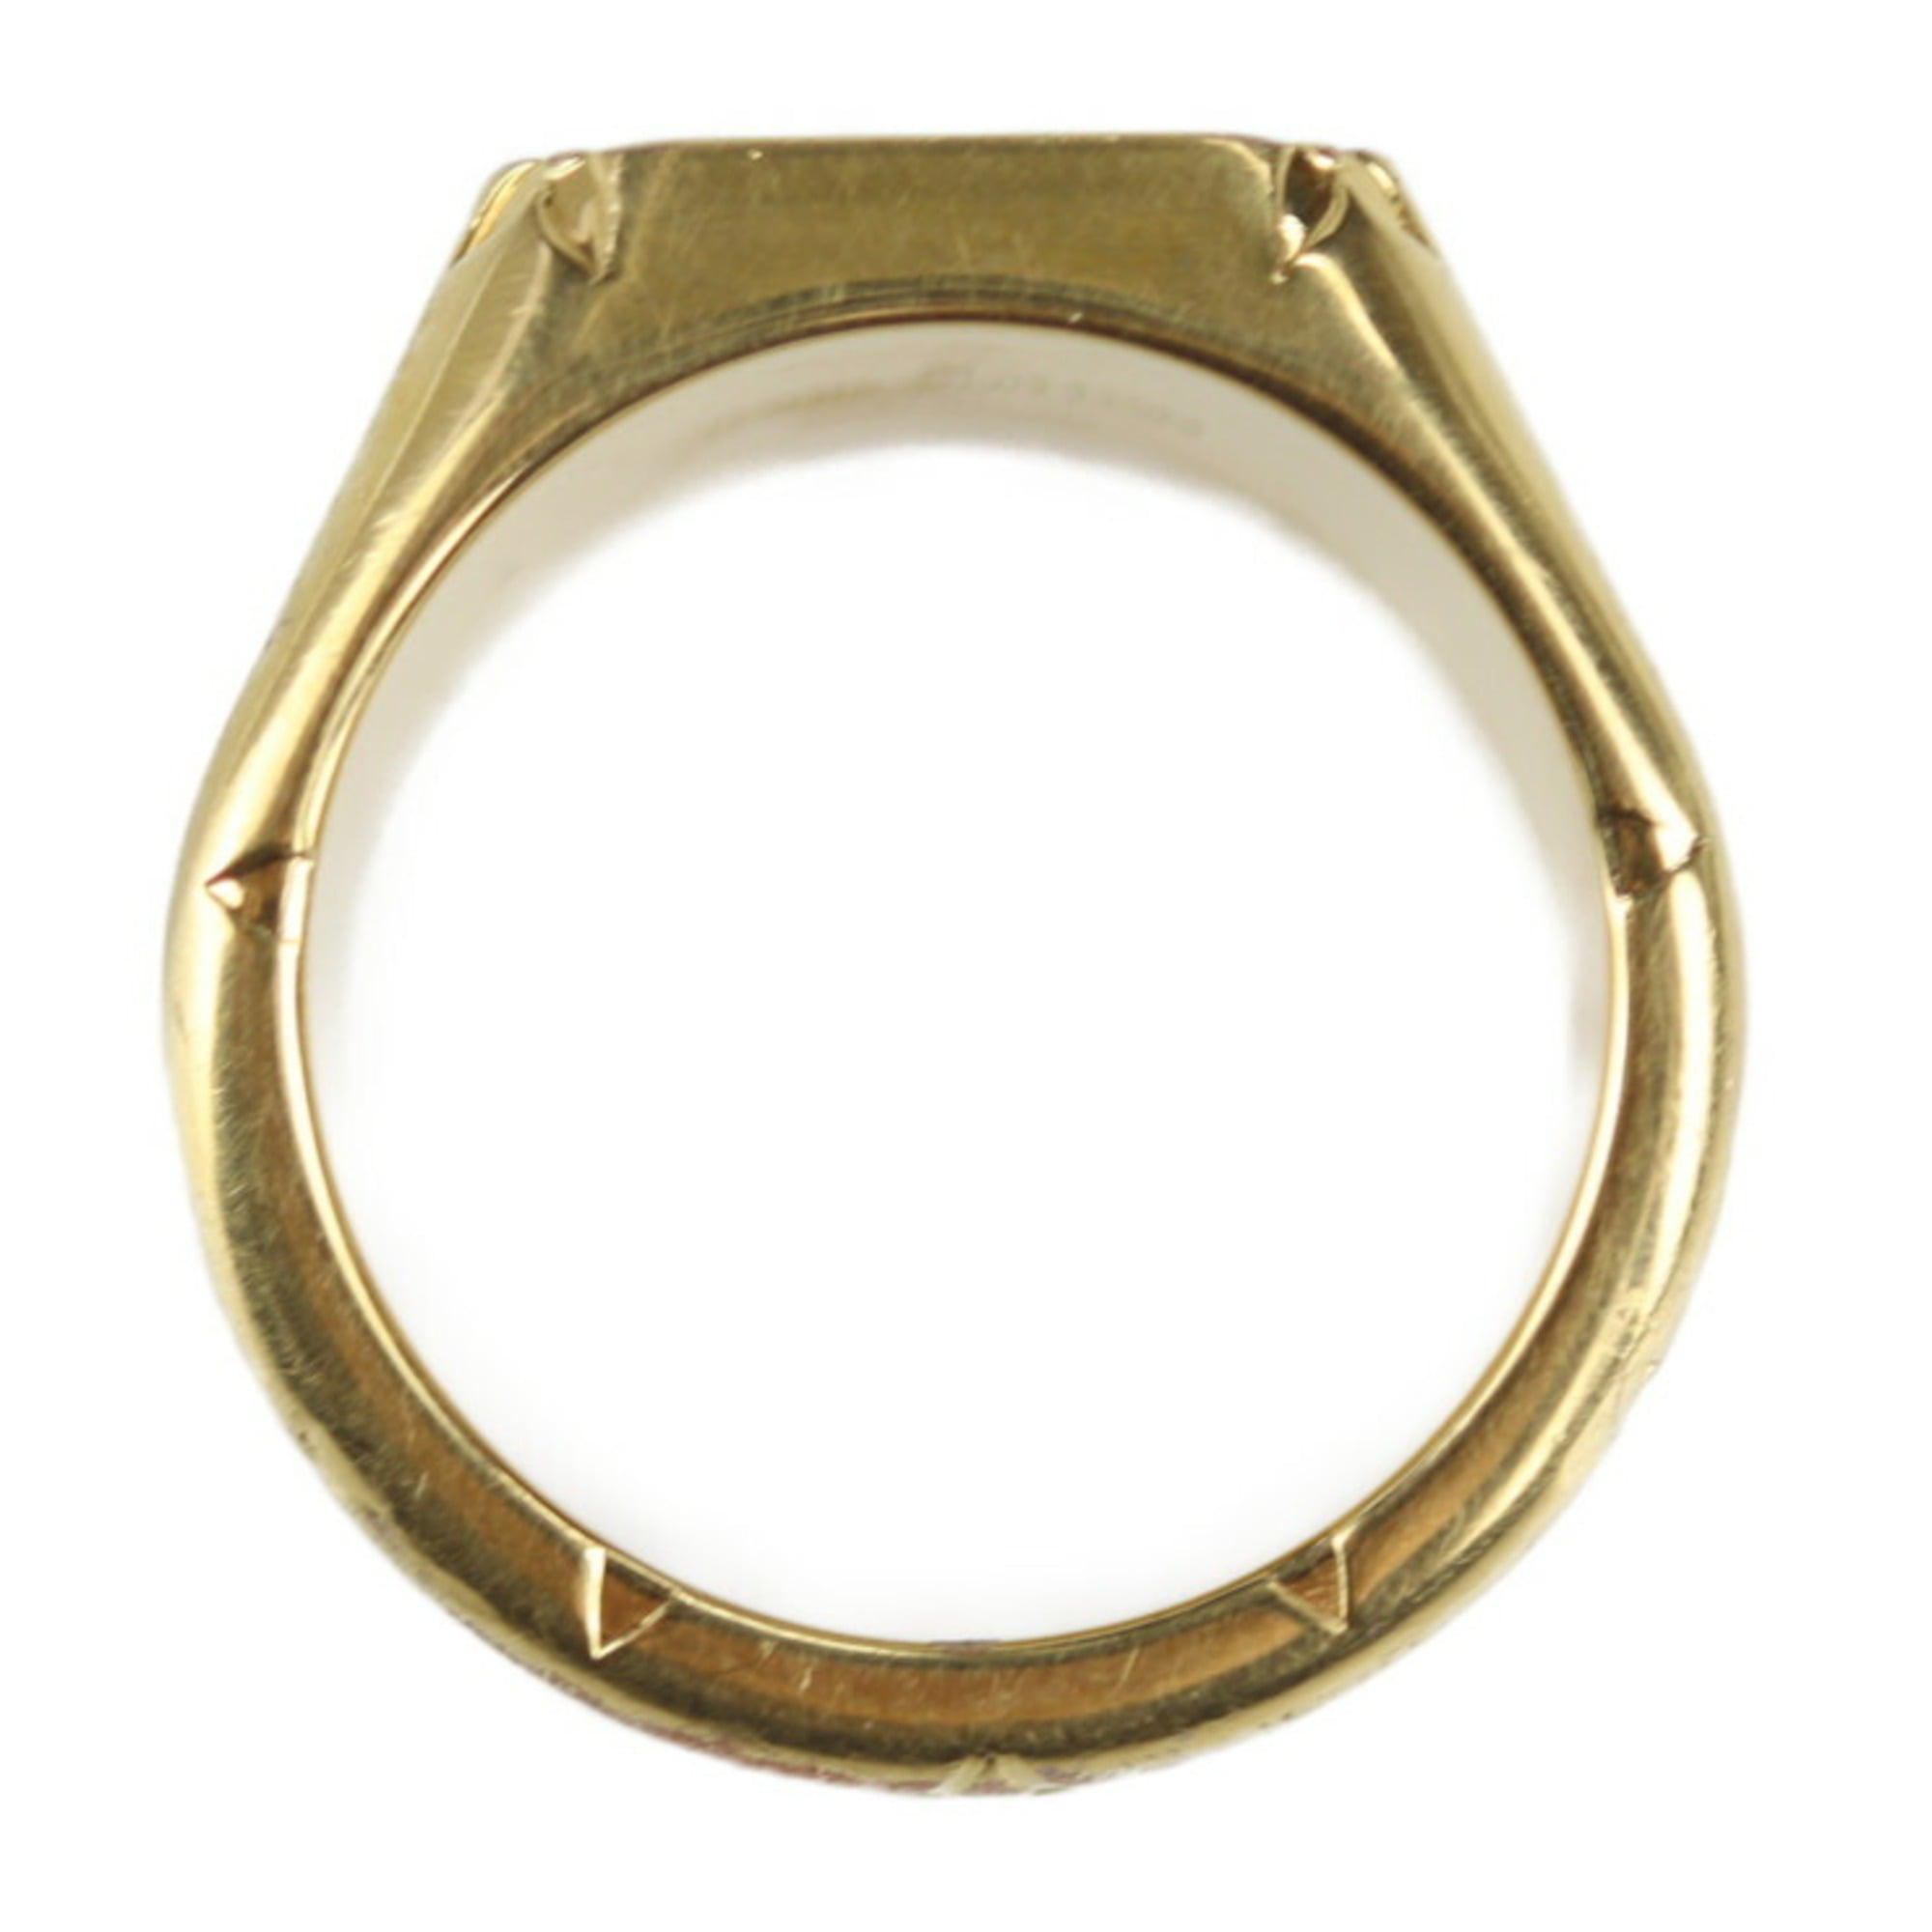 LOUIS VUITTON Ring M80191 Signet Ring Monogram Vuitton SizeL metal gold